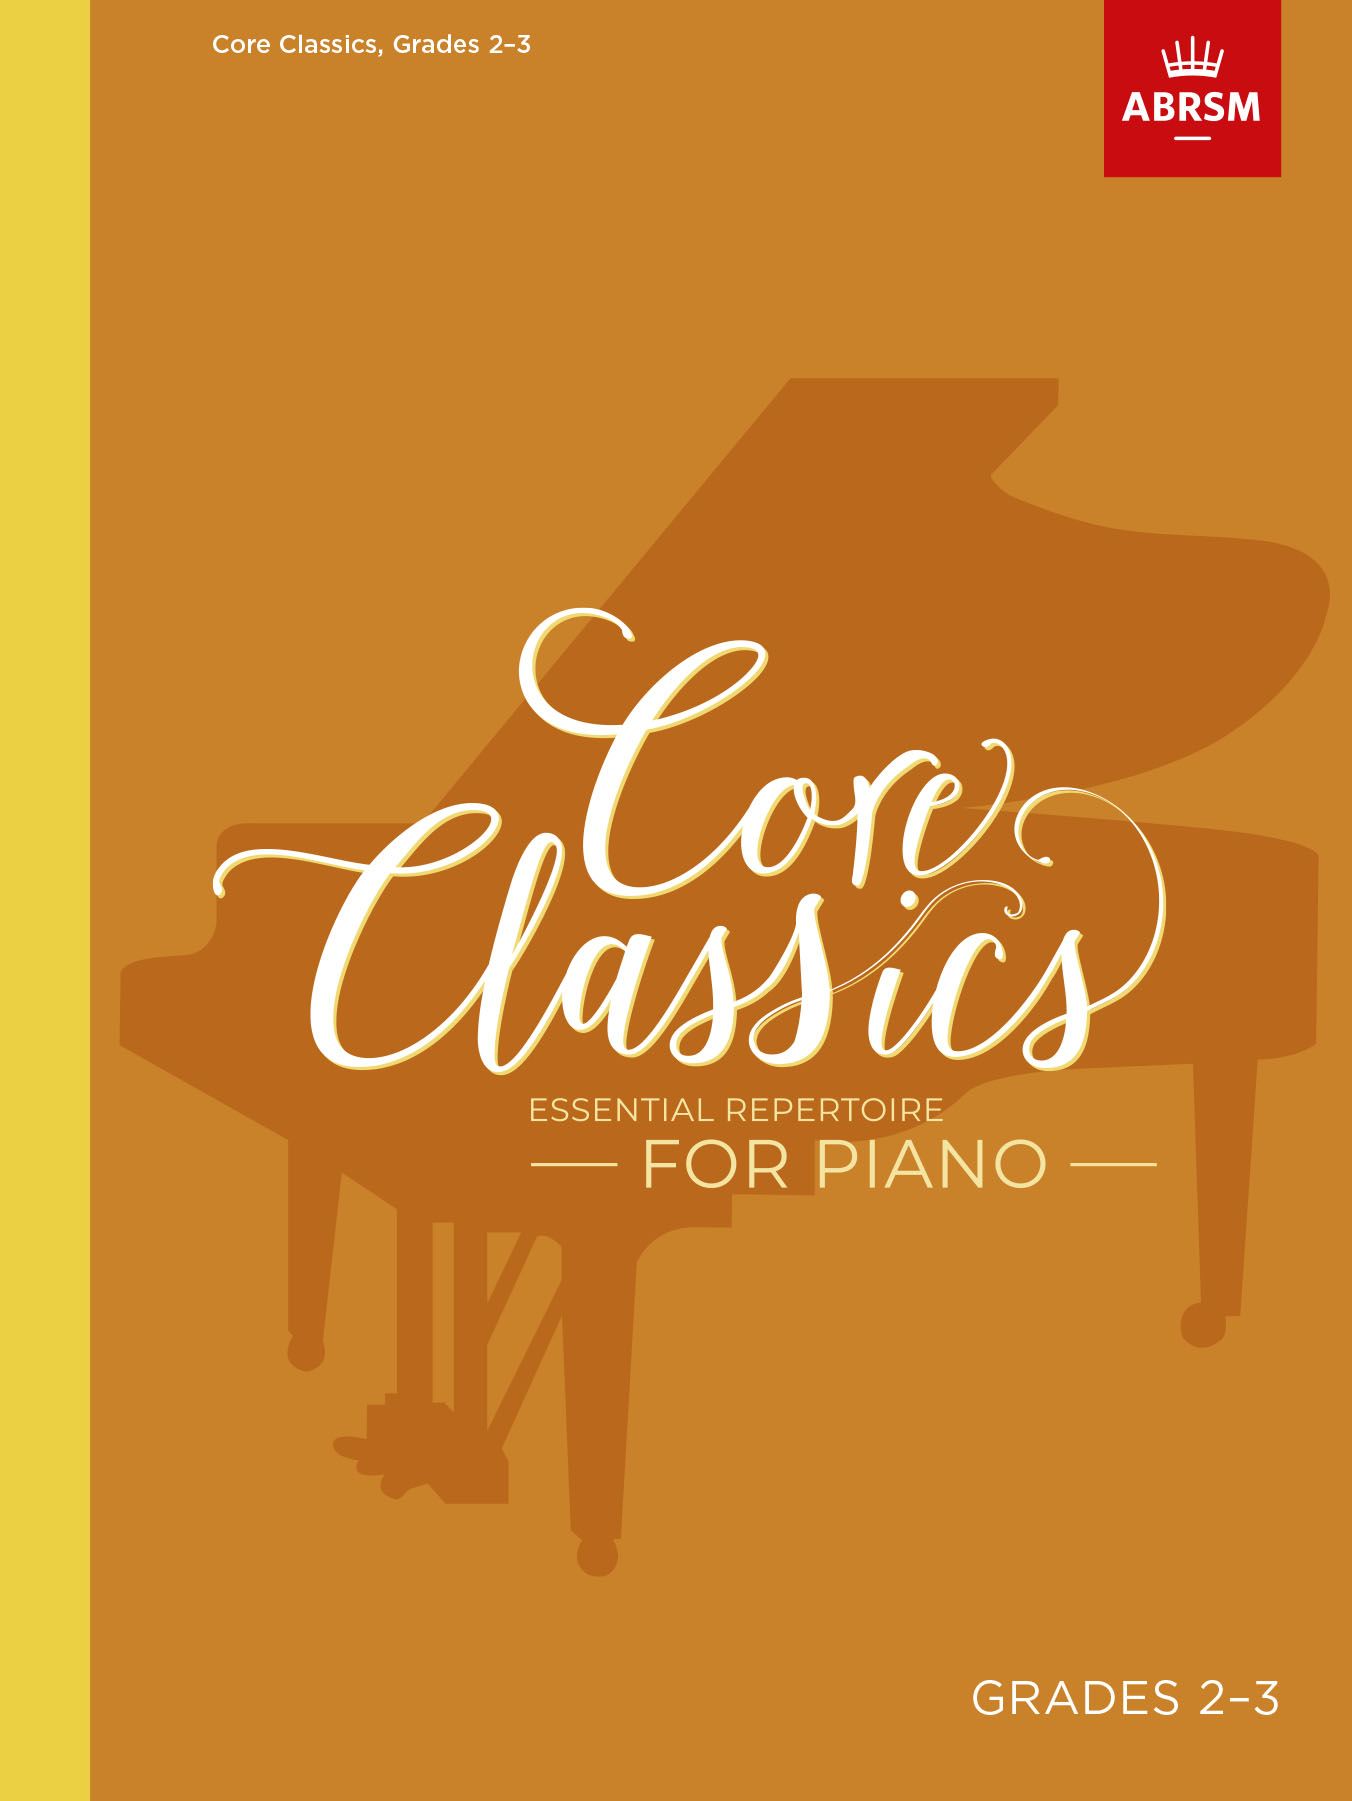 Core Classics - Grades 2-3: Essential Repertoire for Piano